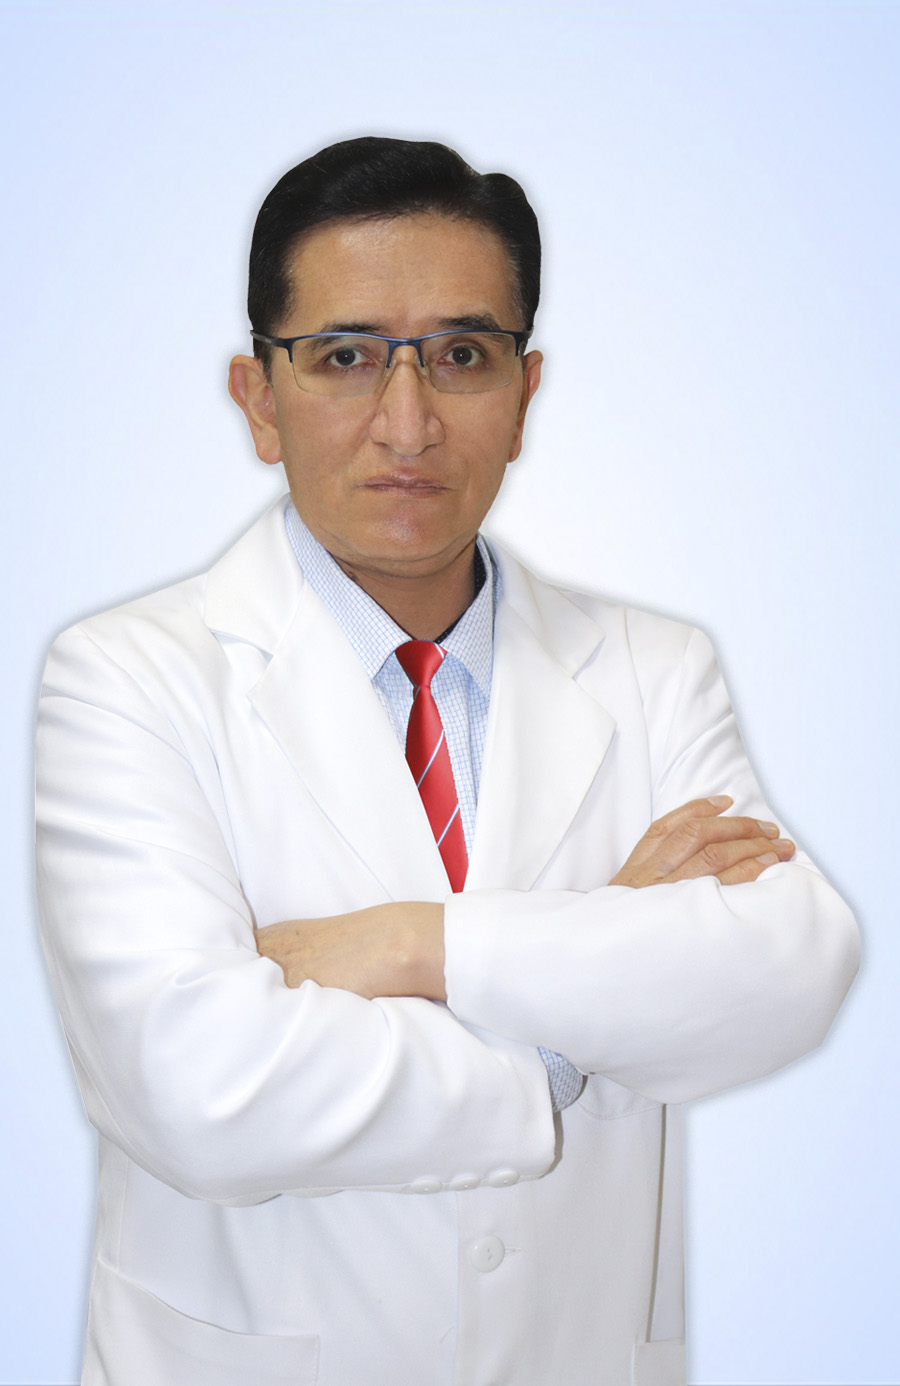 DR. BACA